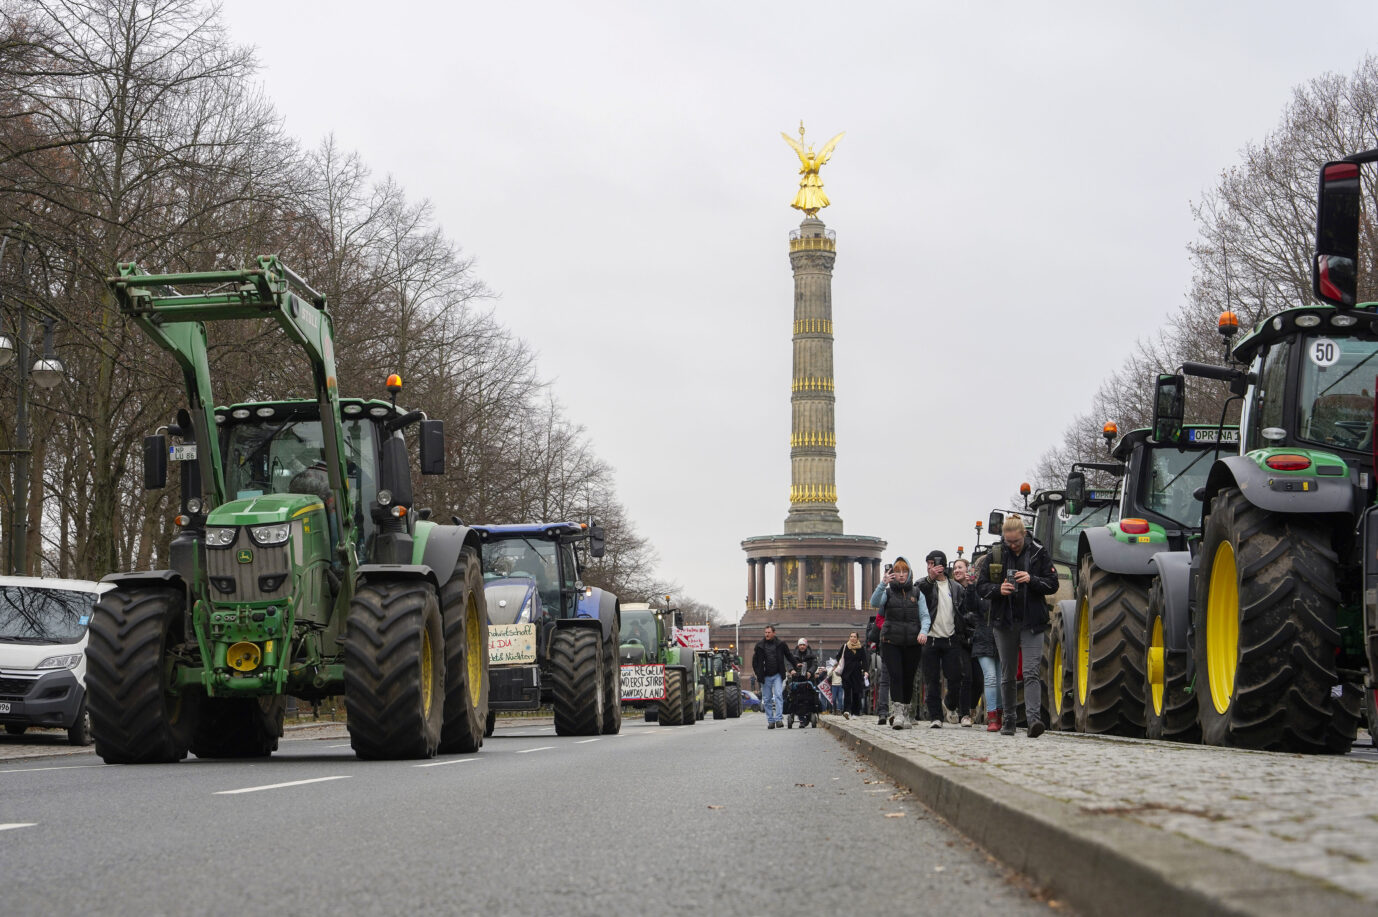 Auf dem Foto befindet sich ein Bauernstreik in Berlin. Ab 8. Januar sind ähnliche Aktionen im gesamten Bundesgebiet geplant. (Themenbild)